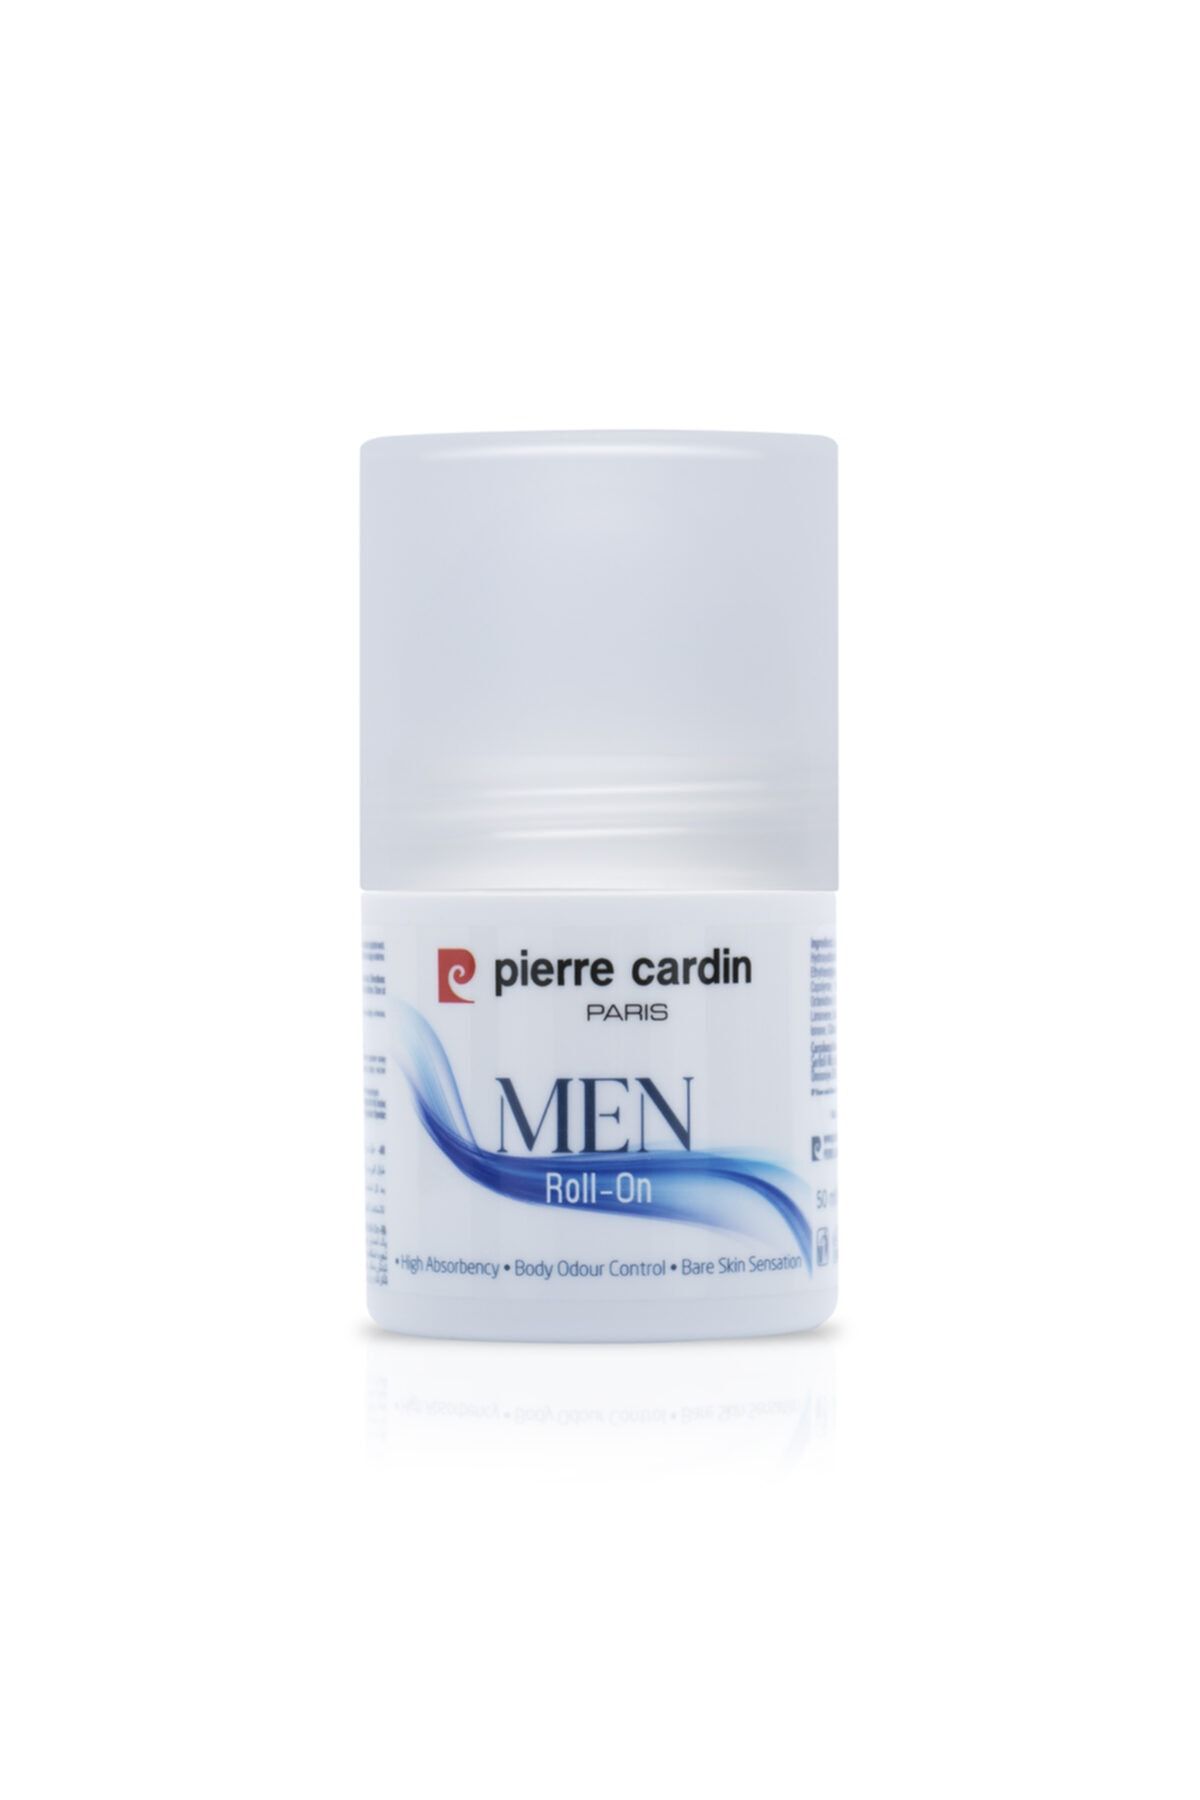 Pierre Cardin Roll On For Men - 50 ml